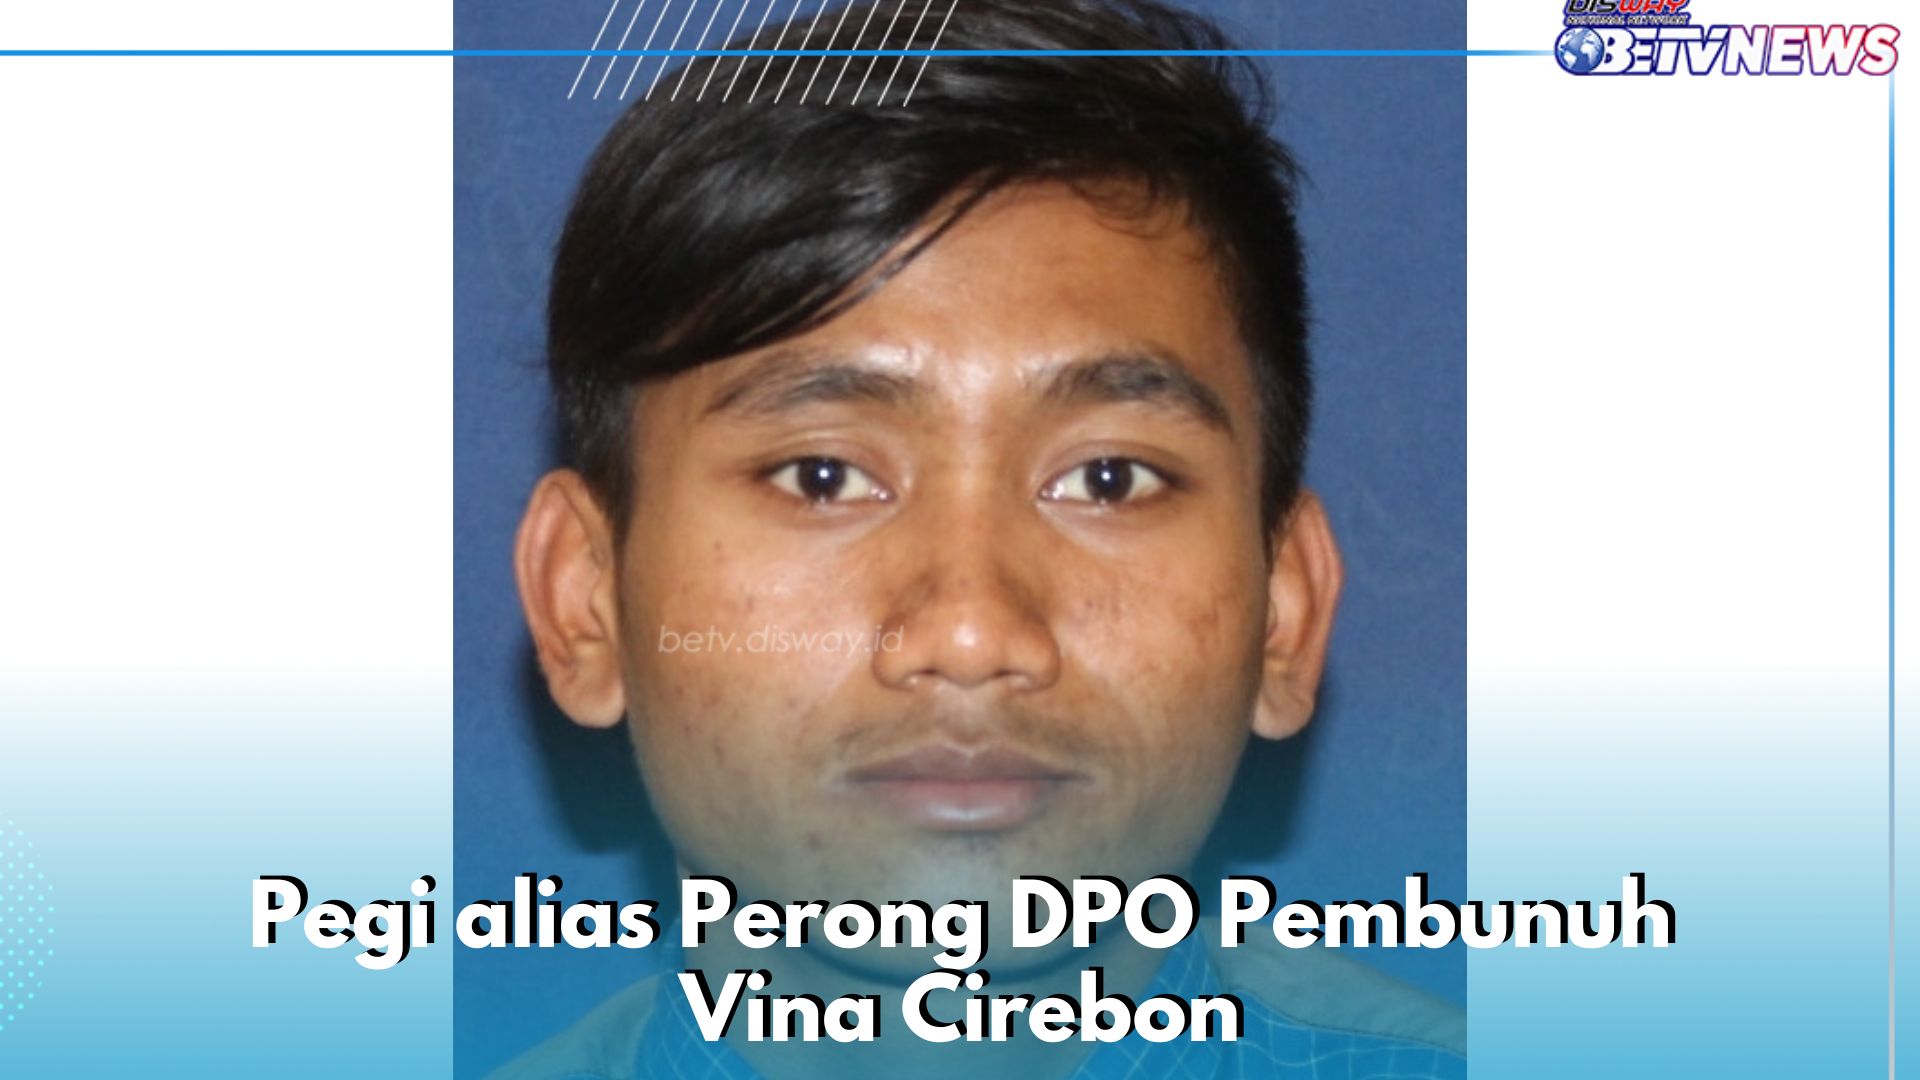 Satu DPO Kasus Pembunuhan Vina Cirebon Akhirnya Tertangkap, Polisi Rilis Tampang Pegi alias Perong